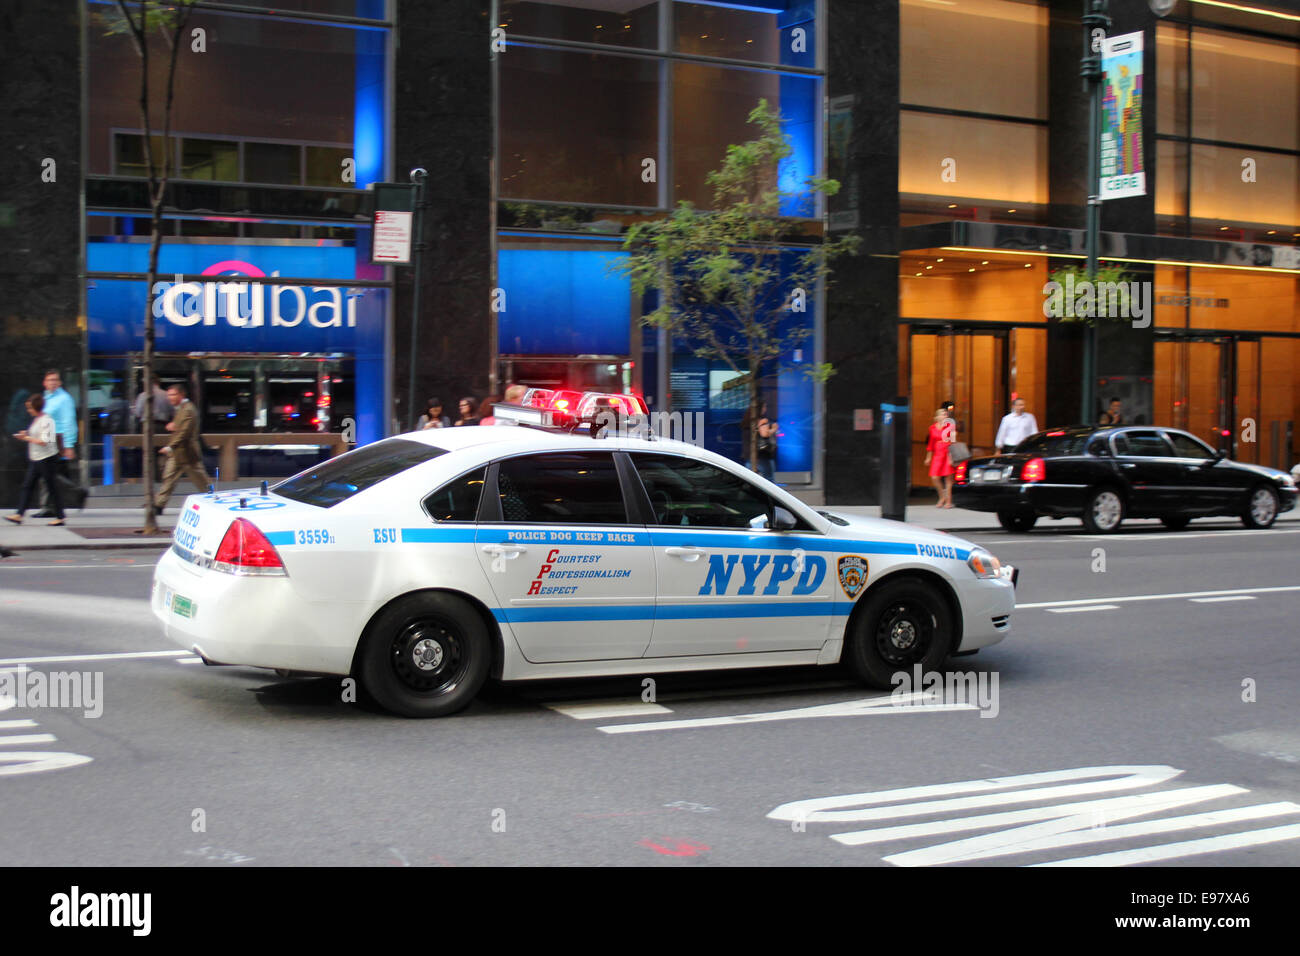 New York City Police Department Fahrzeug auf einen Vorfall zu reagieren. Stockfoto